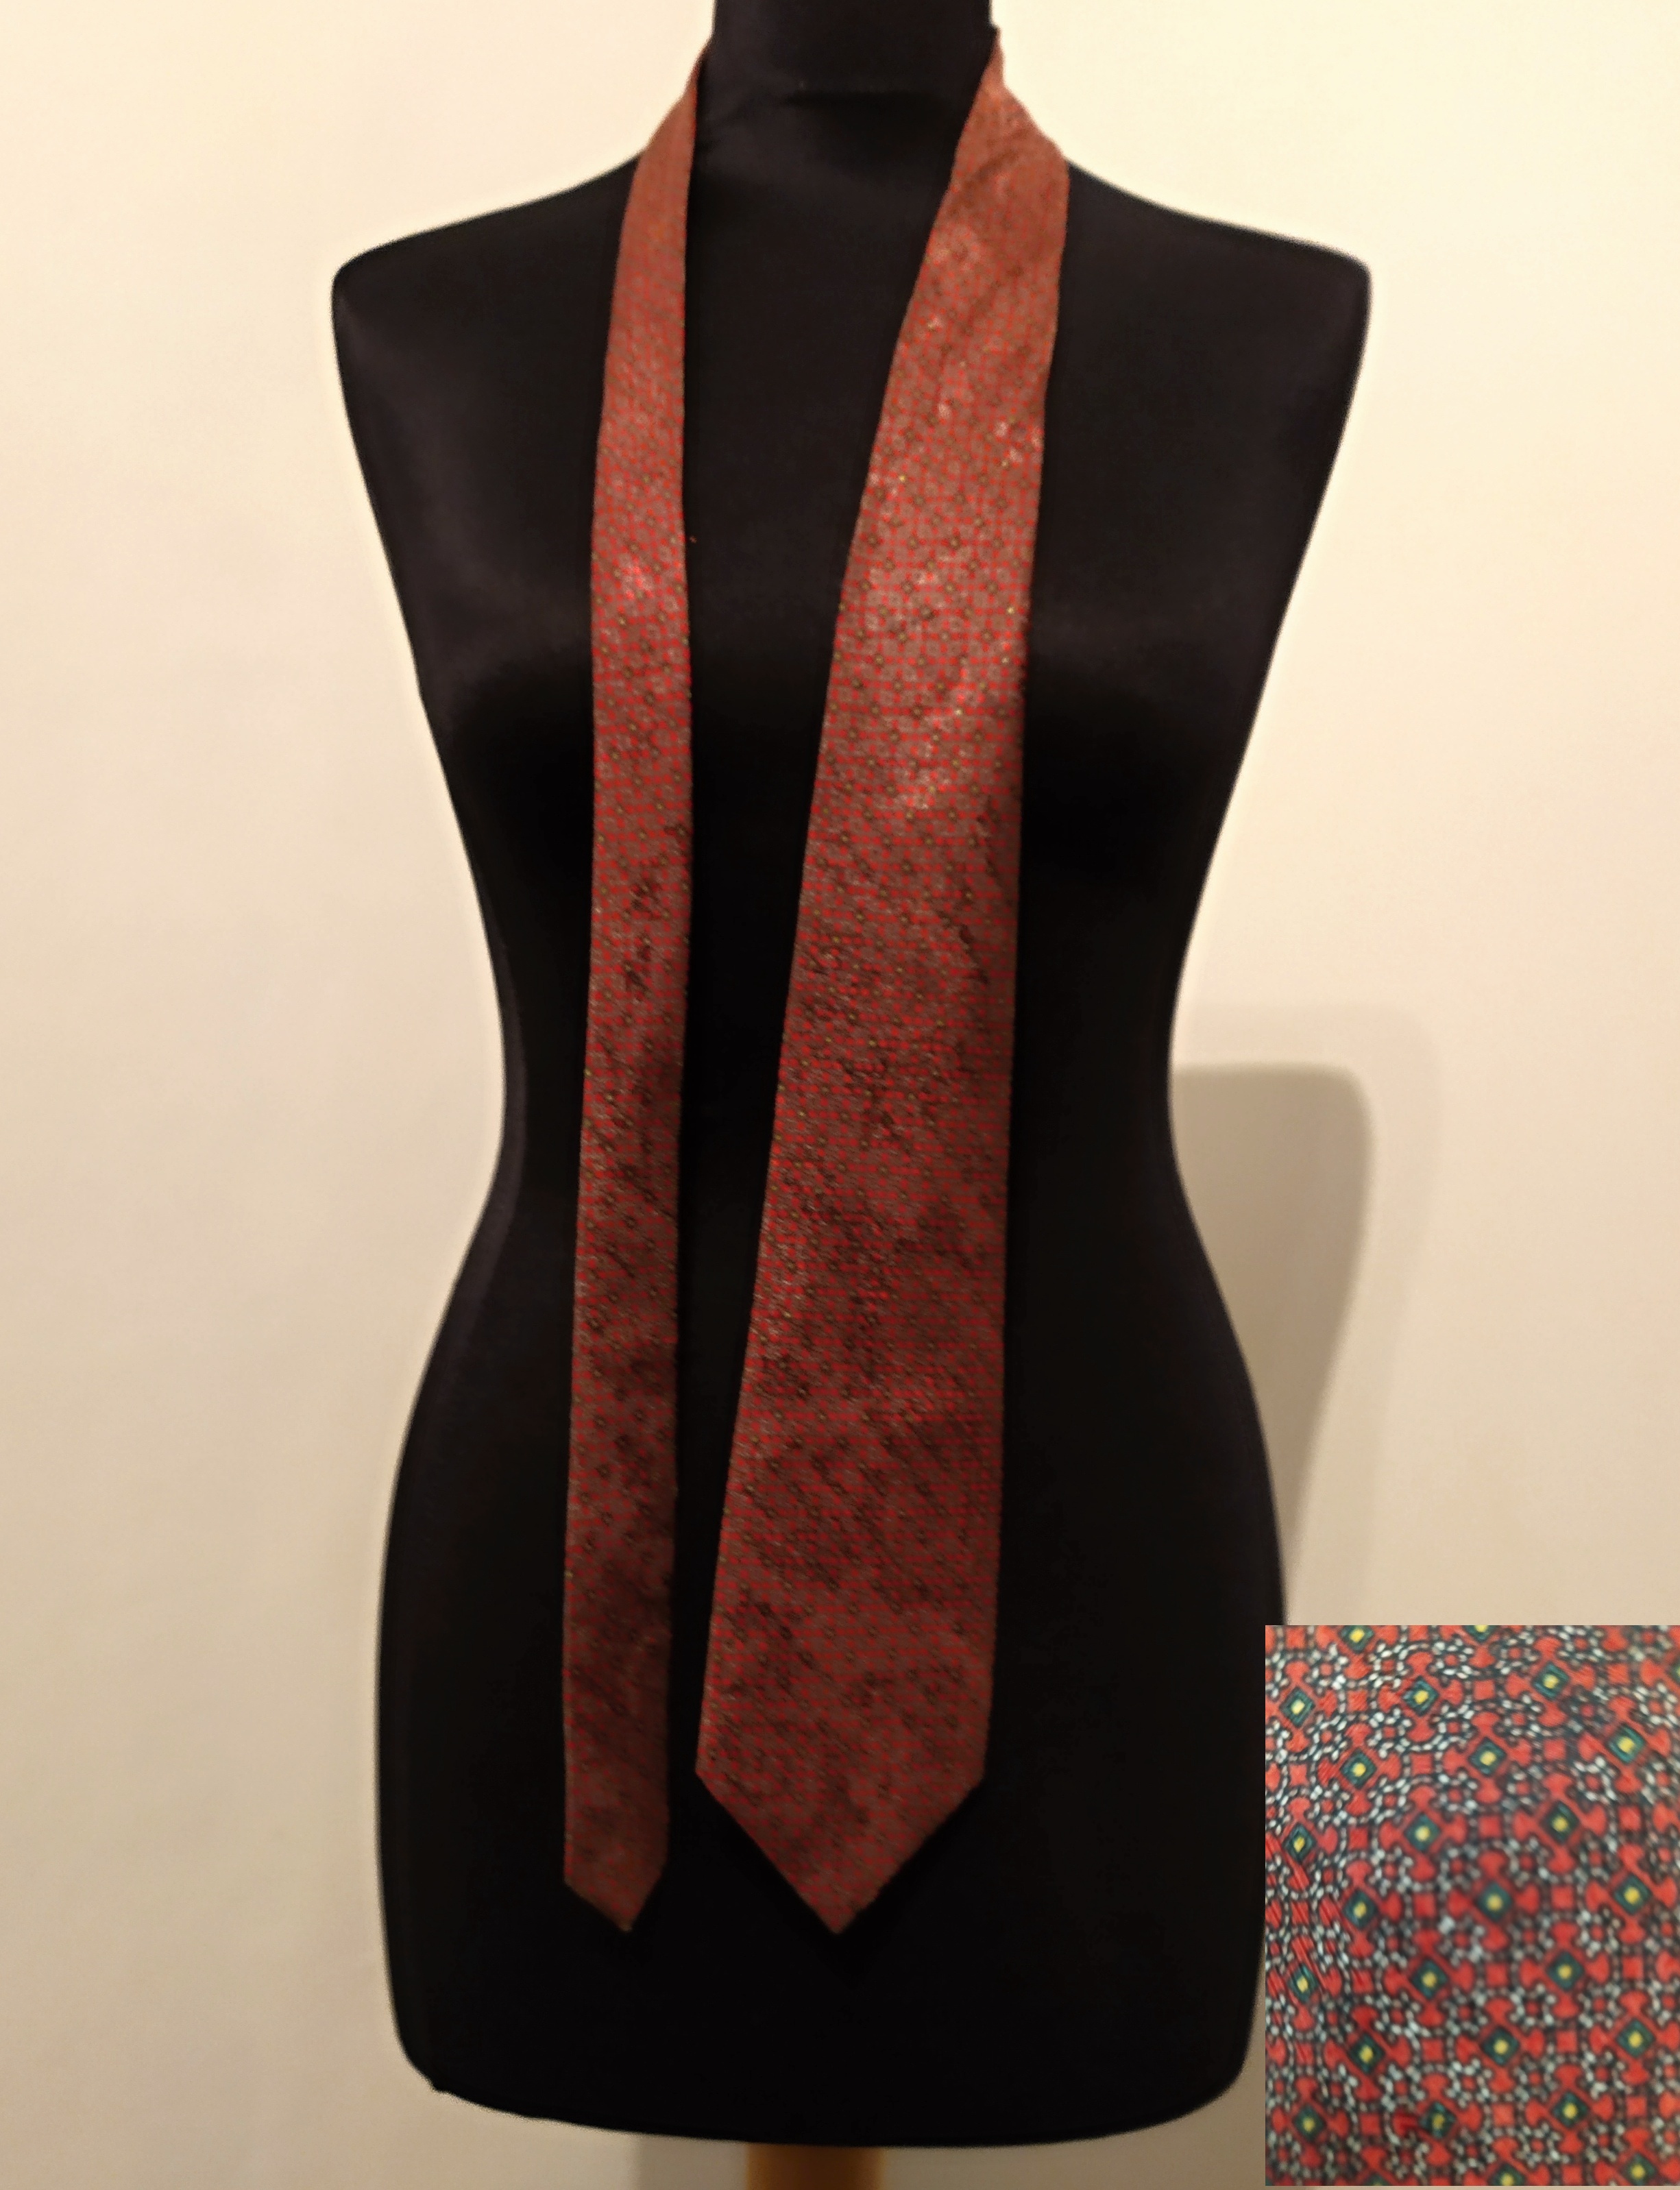 Pánská kravata se vzorem